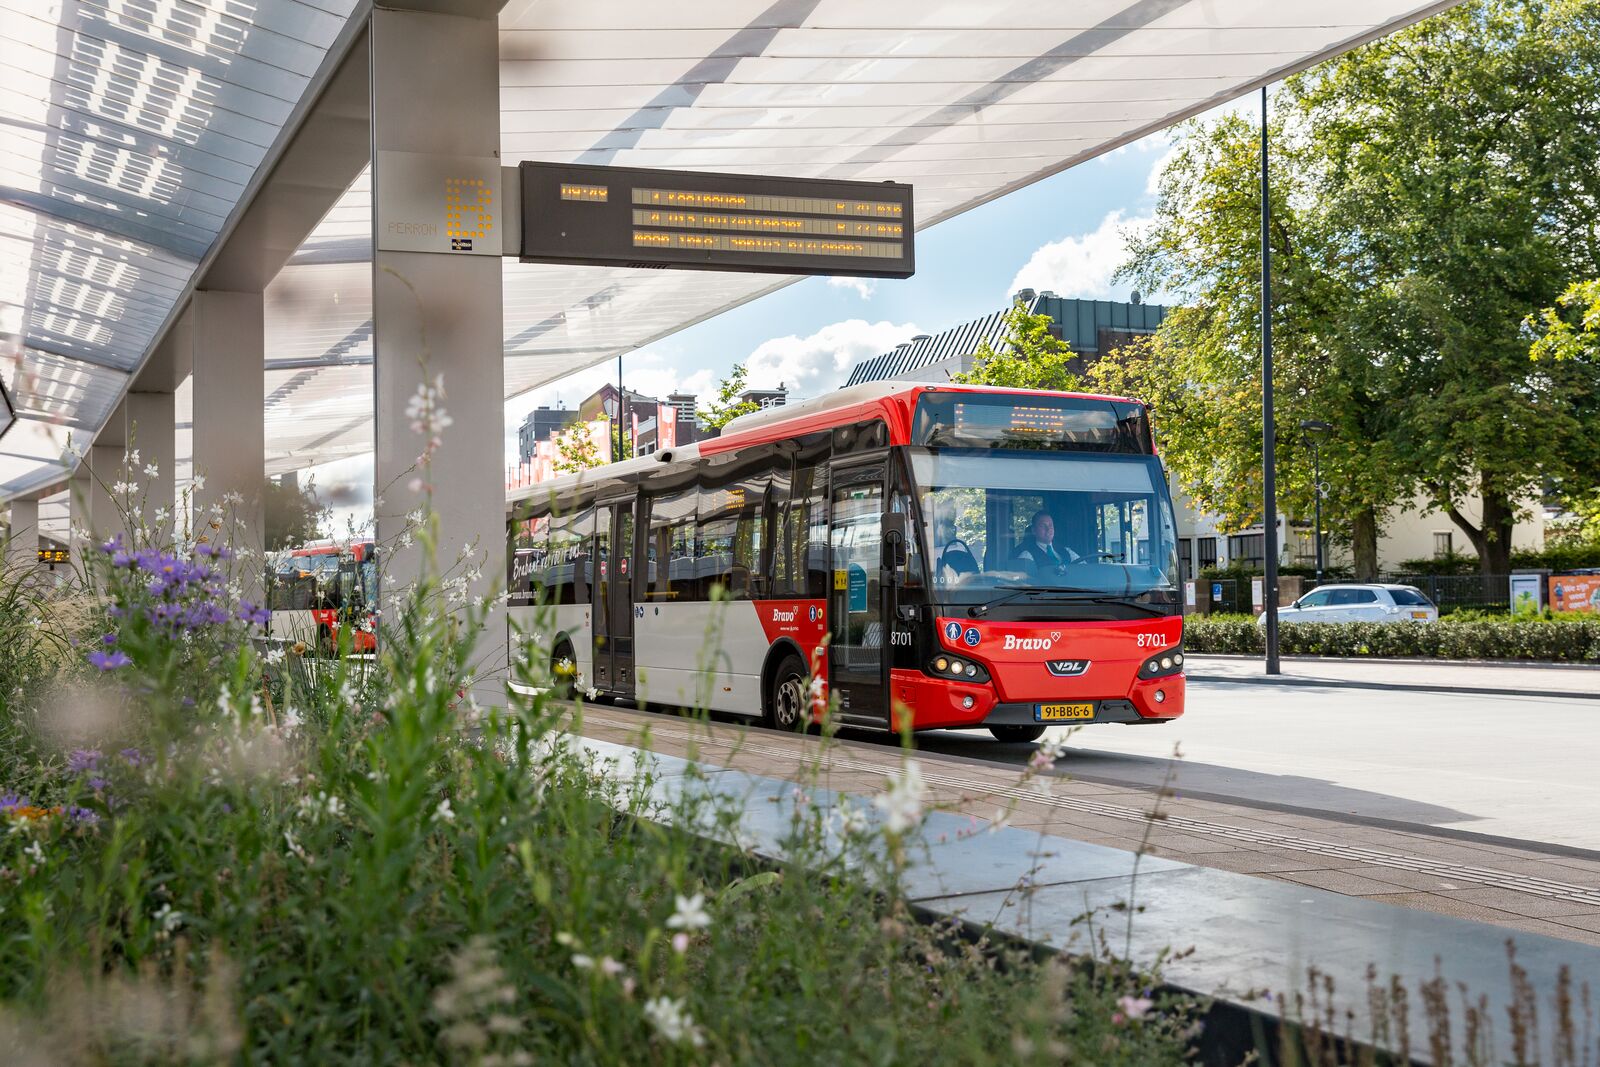 Een rode bus van Arriva staat bij een bushalte onder een overkapping op het voorplein bij treinstation Tilburg.